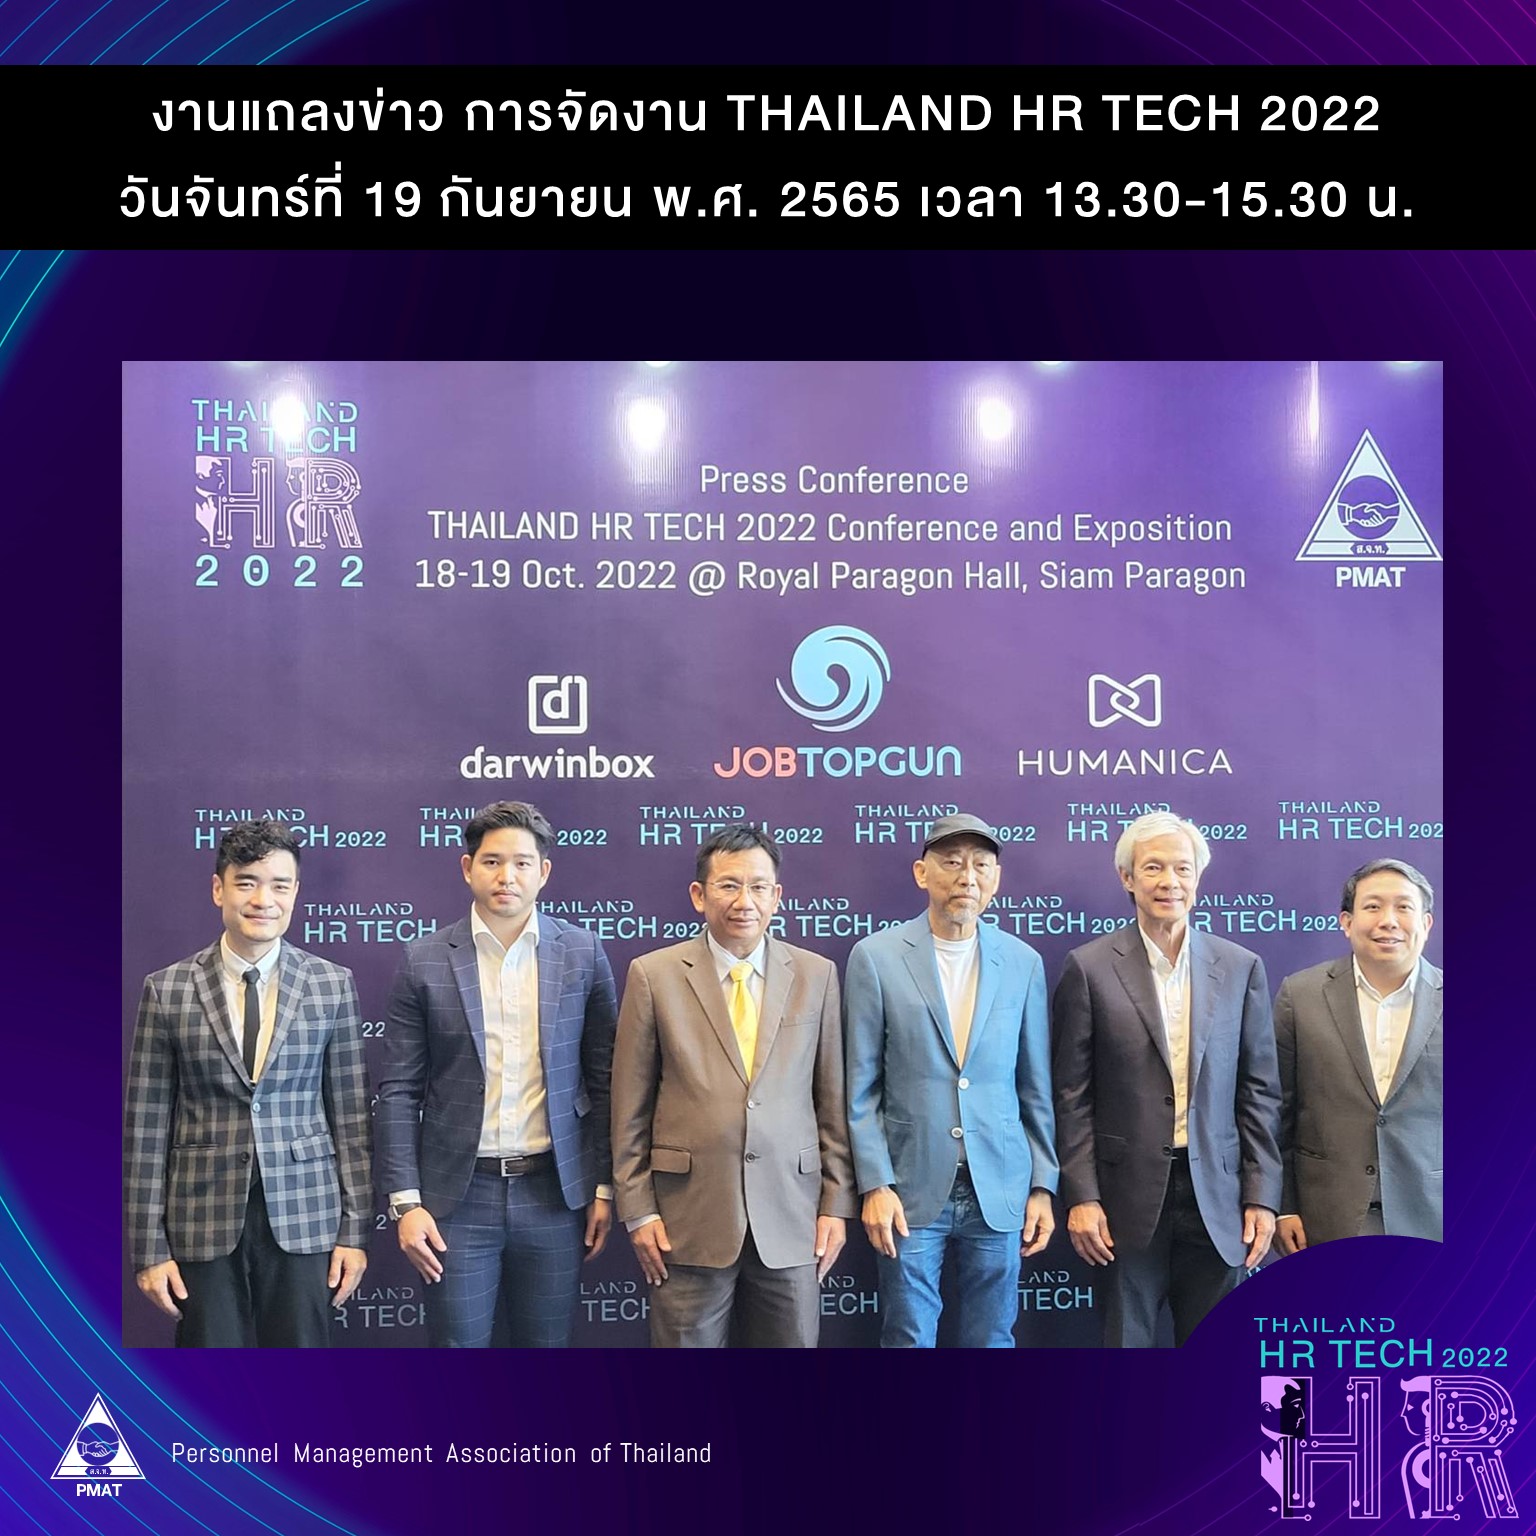 �Thailand HR Tech 2022� �Ѿ����š�ú����ä�����ؤ digital HR ����ٻẺ